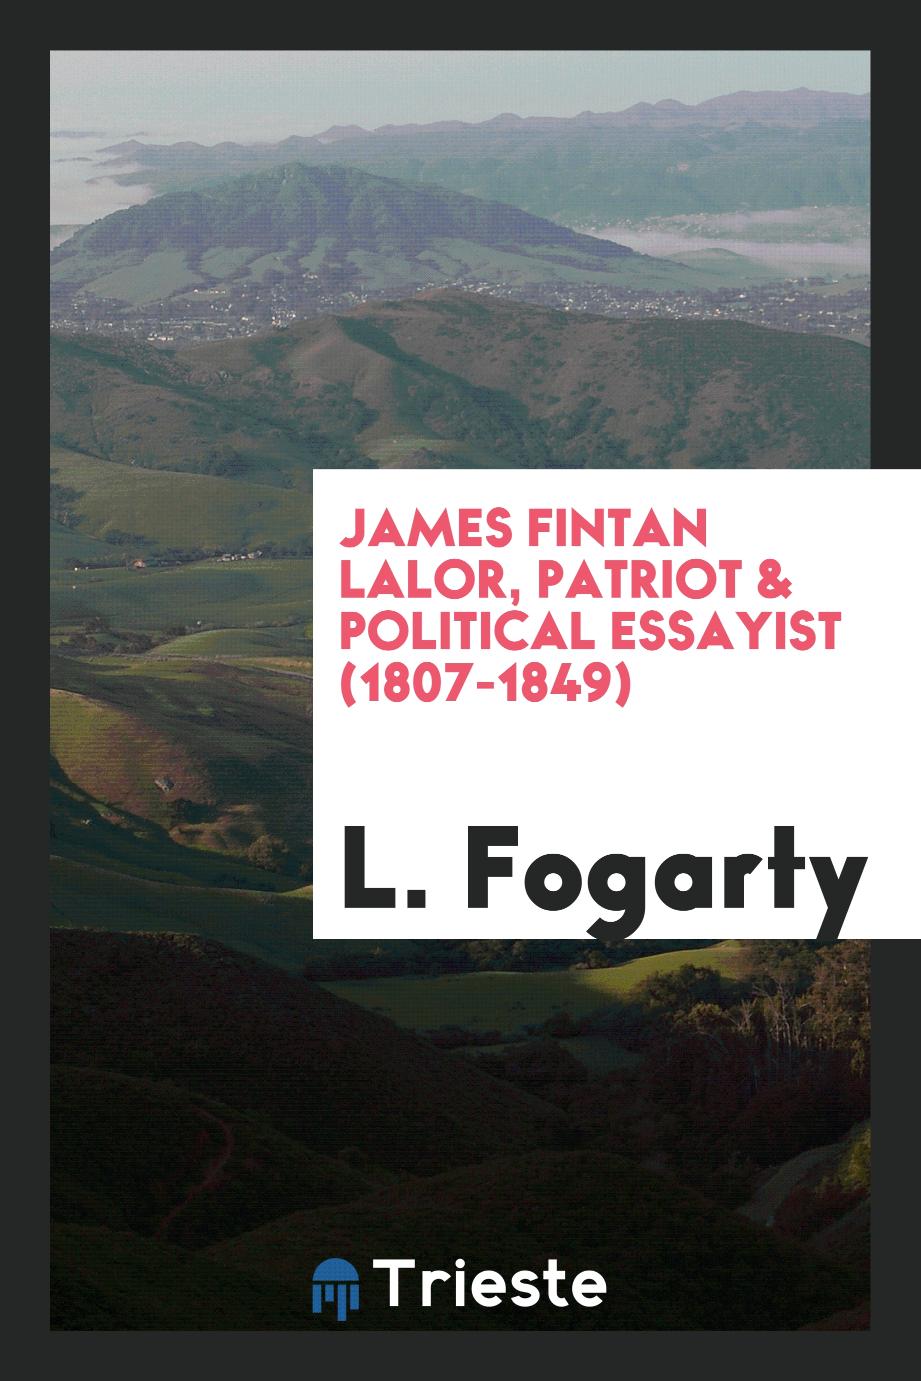 James Fintan Lalor, patriot & political essayist (1807-1849)